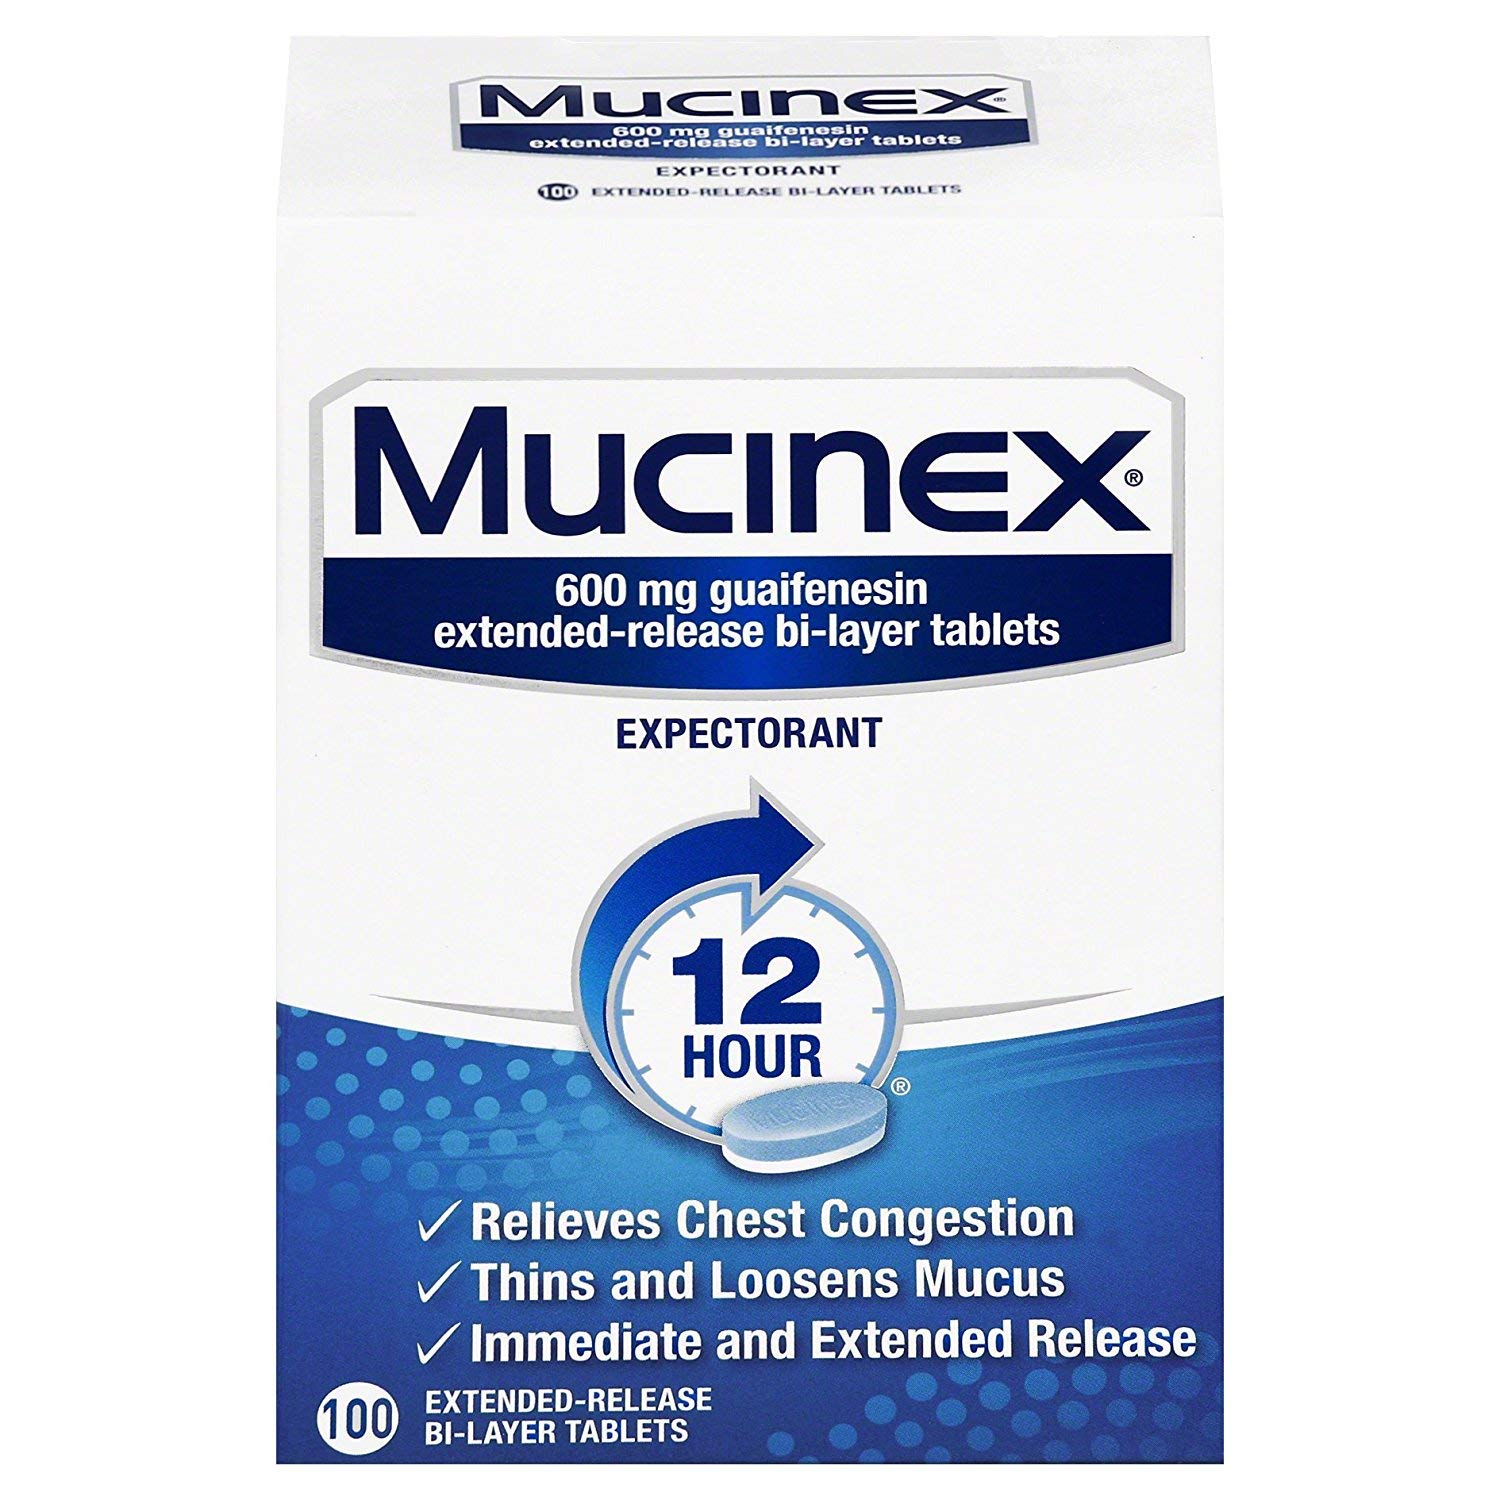 Mucinex - image 0